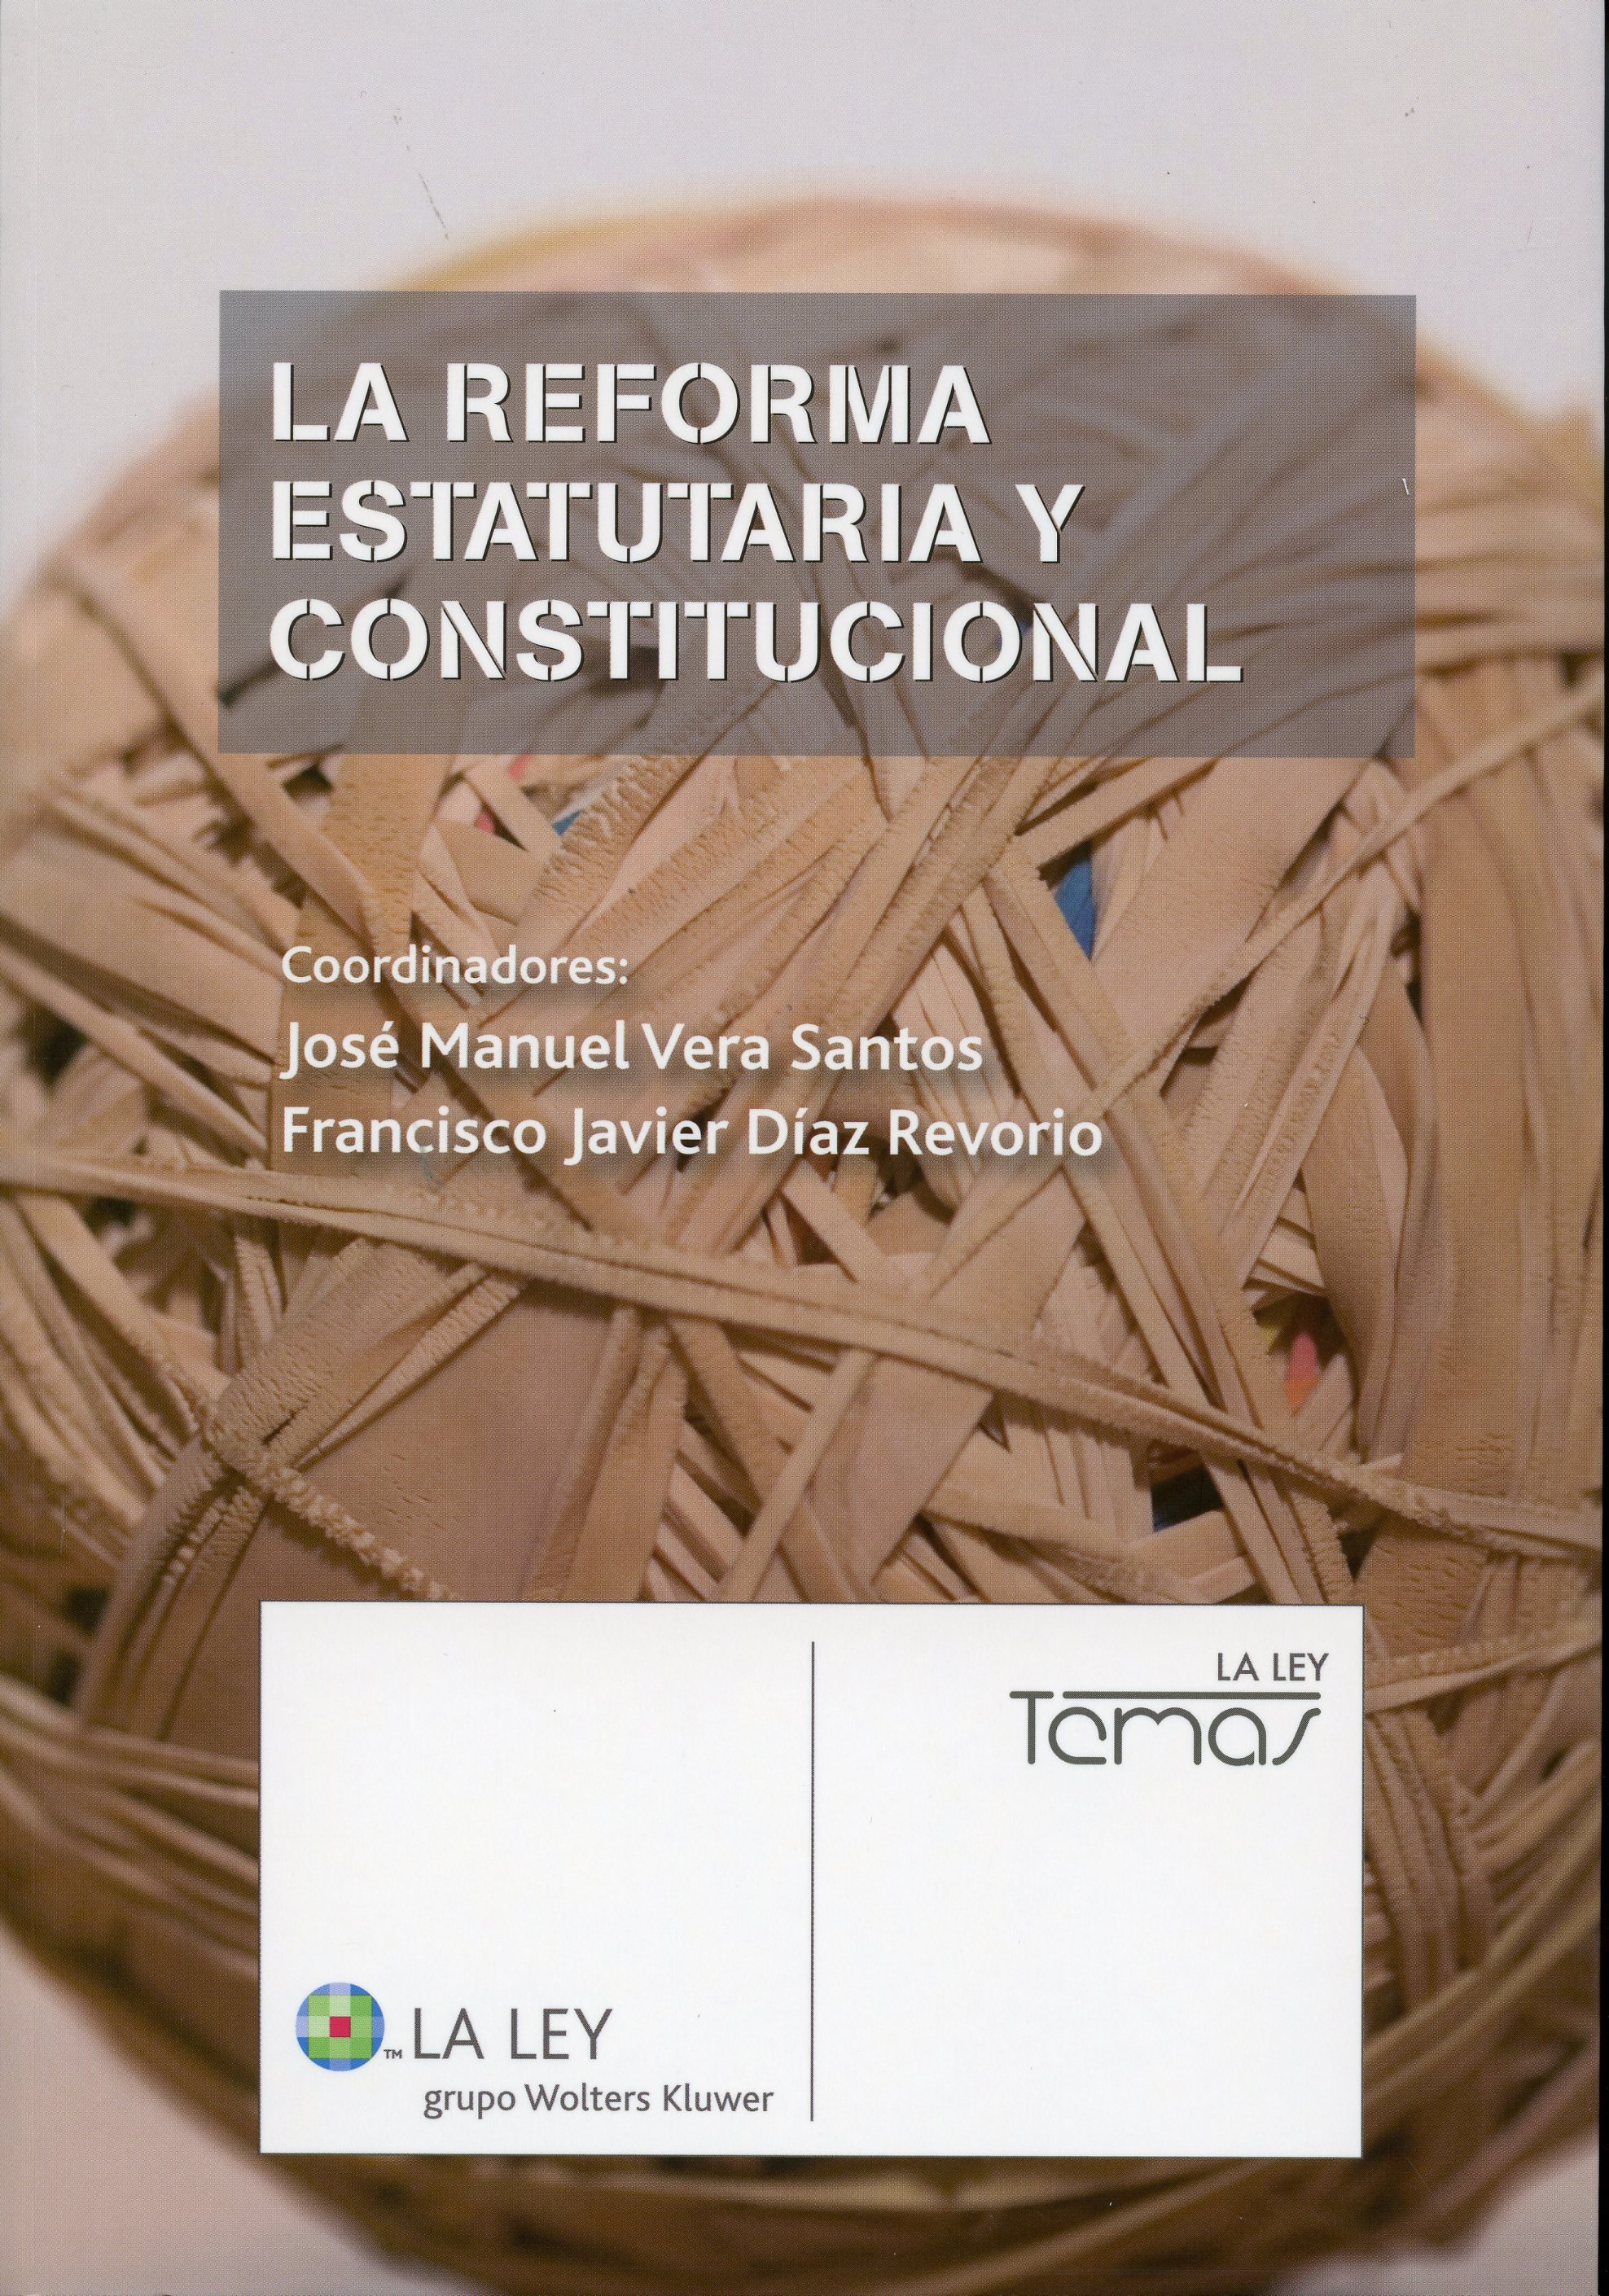 La reforma estatuaria y constitucional